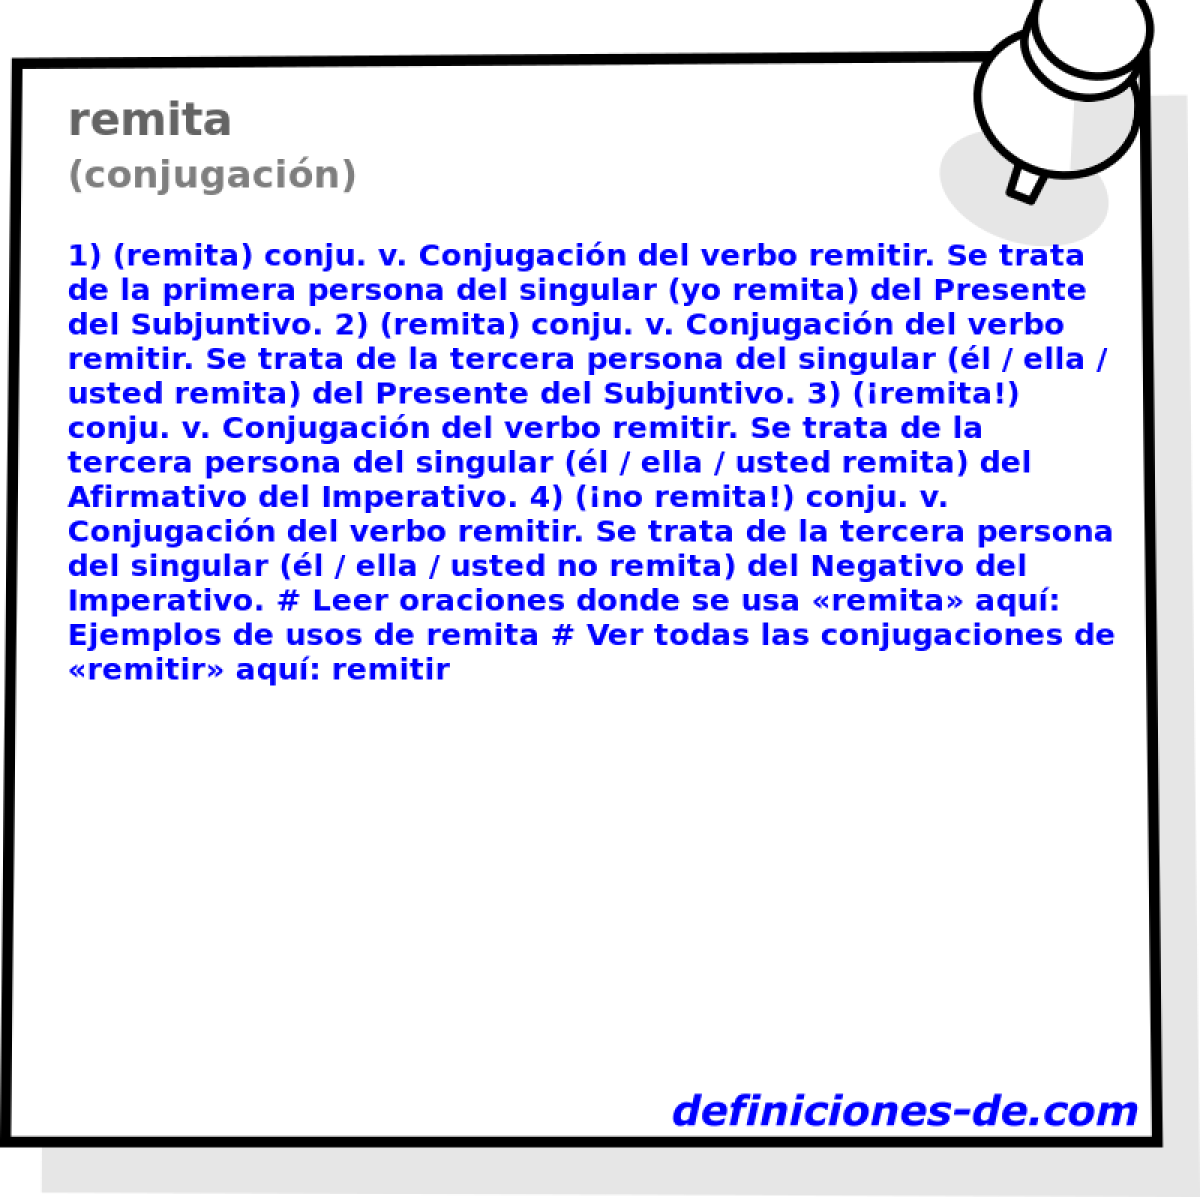 remita (conjugacin)